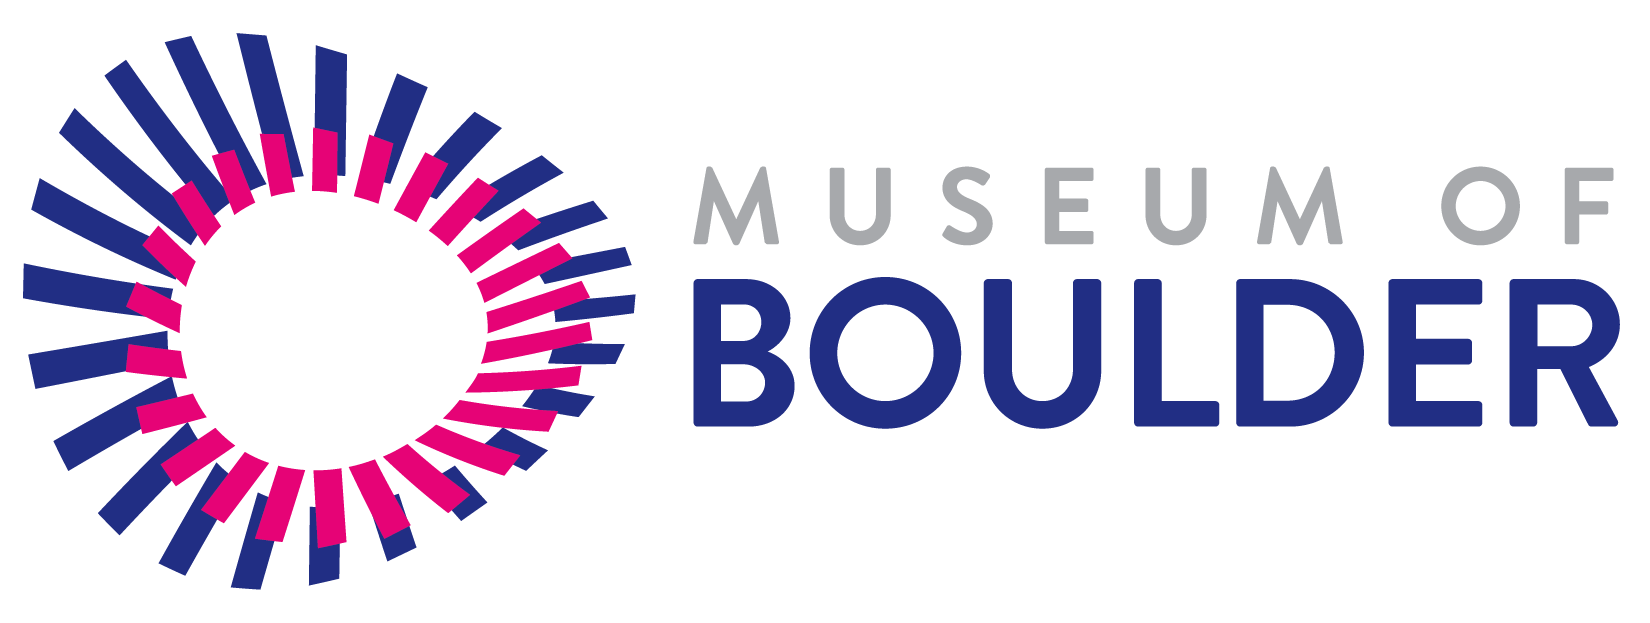 Boulder Logo - Museum of Boulder